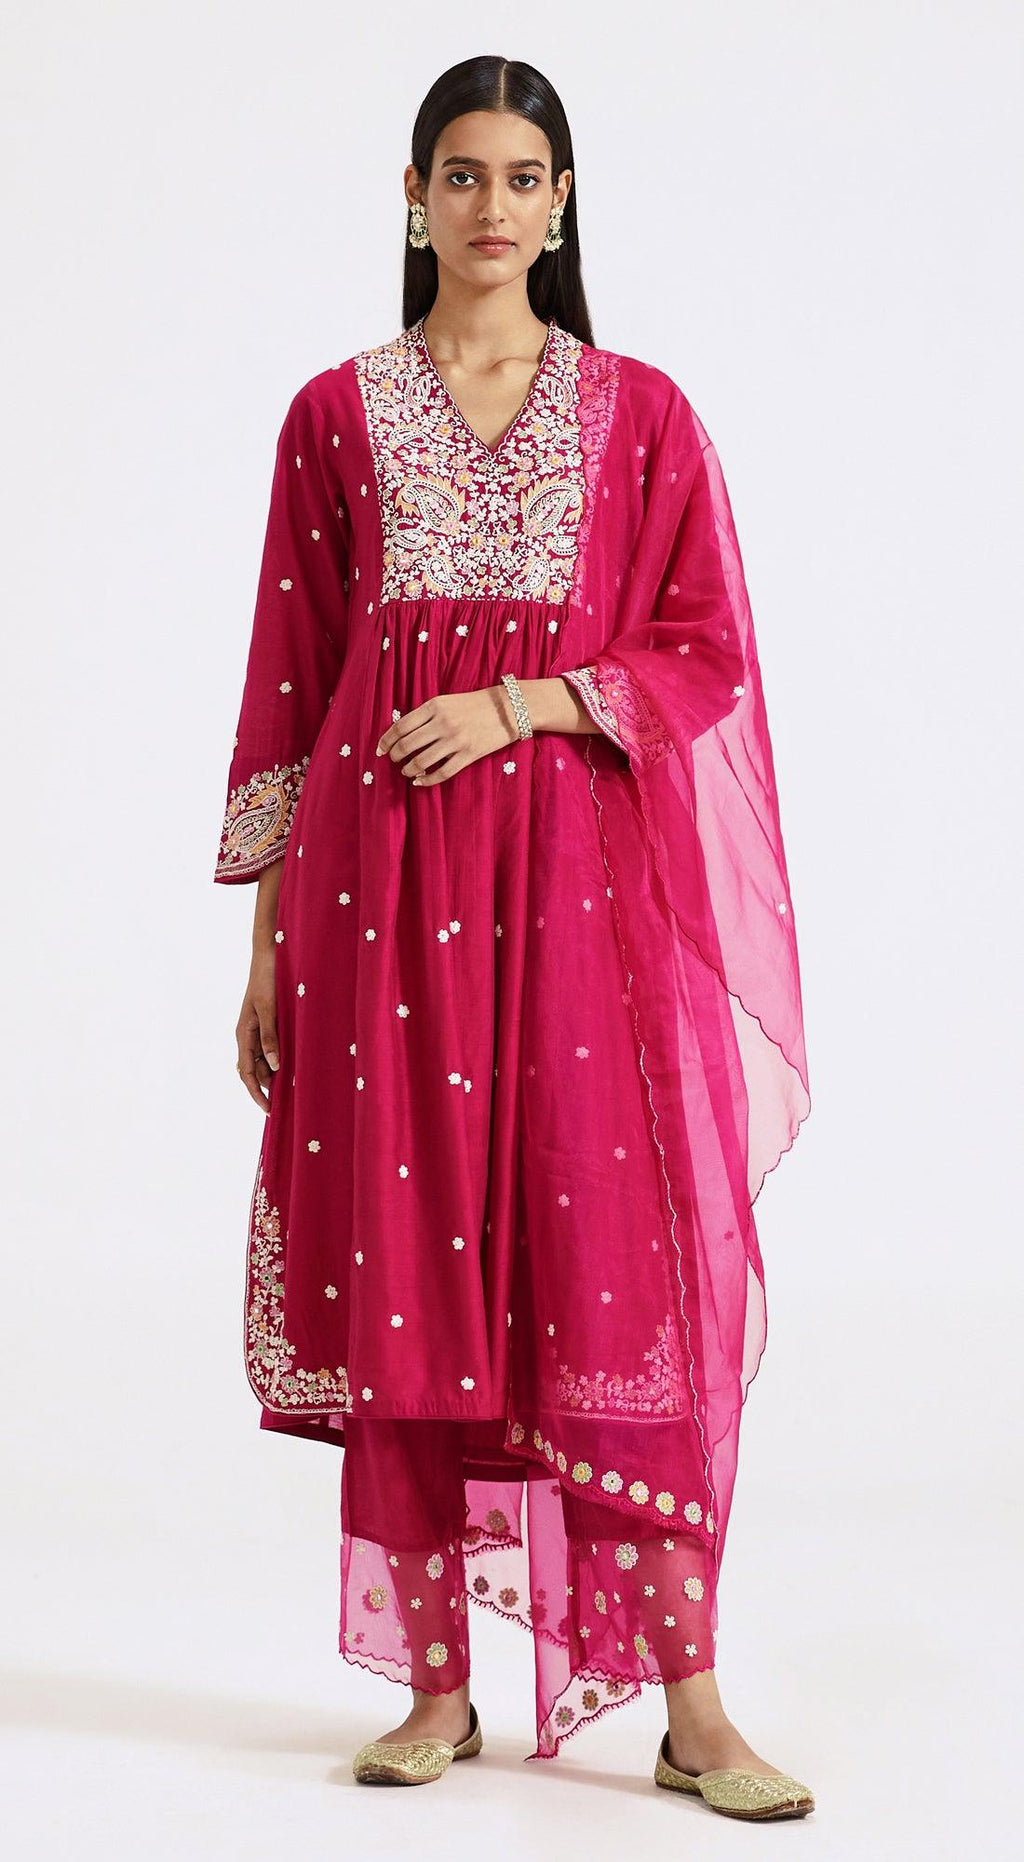 Rani Pink Embroidered Suit Set - Basanti Kapde aur Koffee